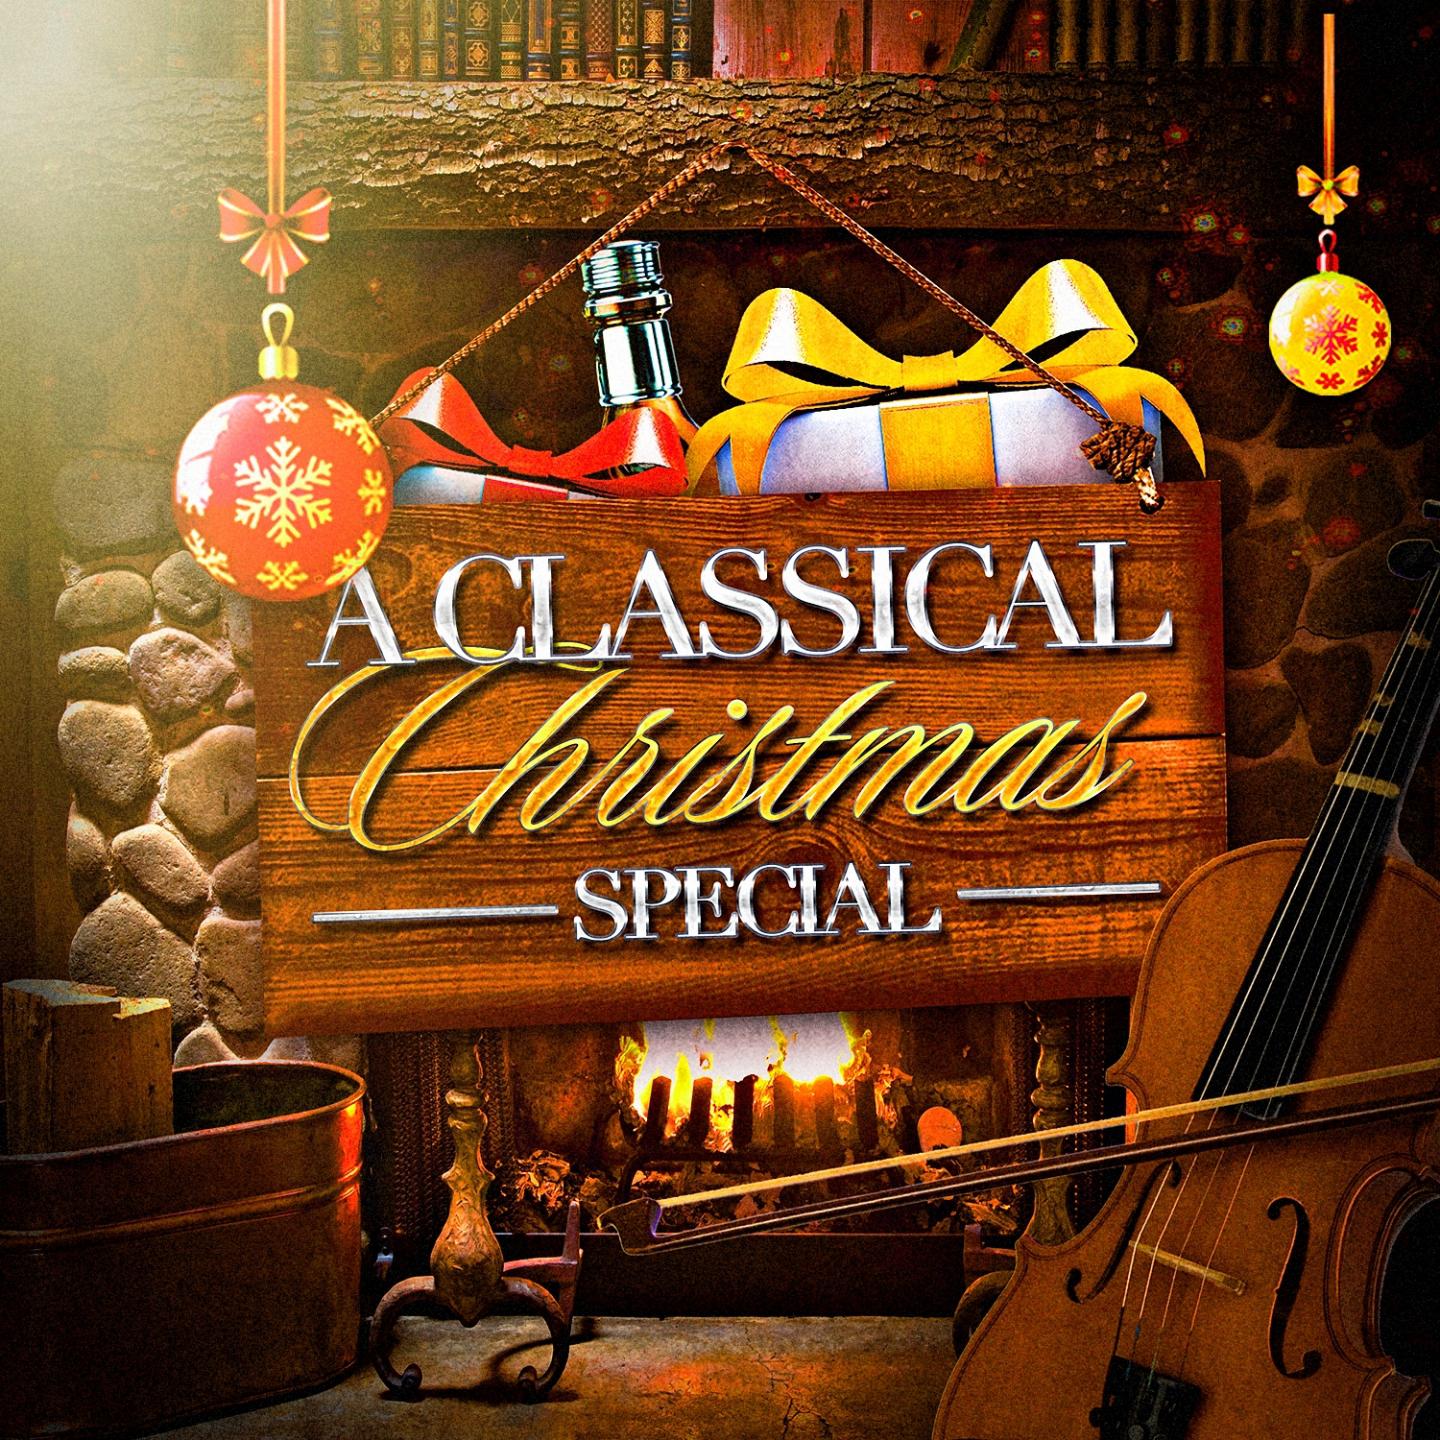 Sinfonia from "Christmas Oratorio" BWV 248